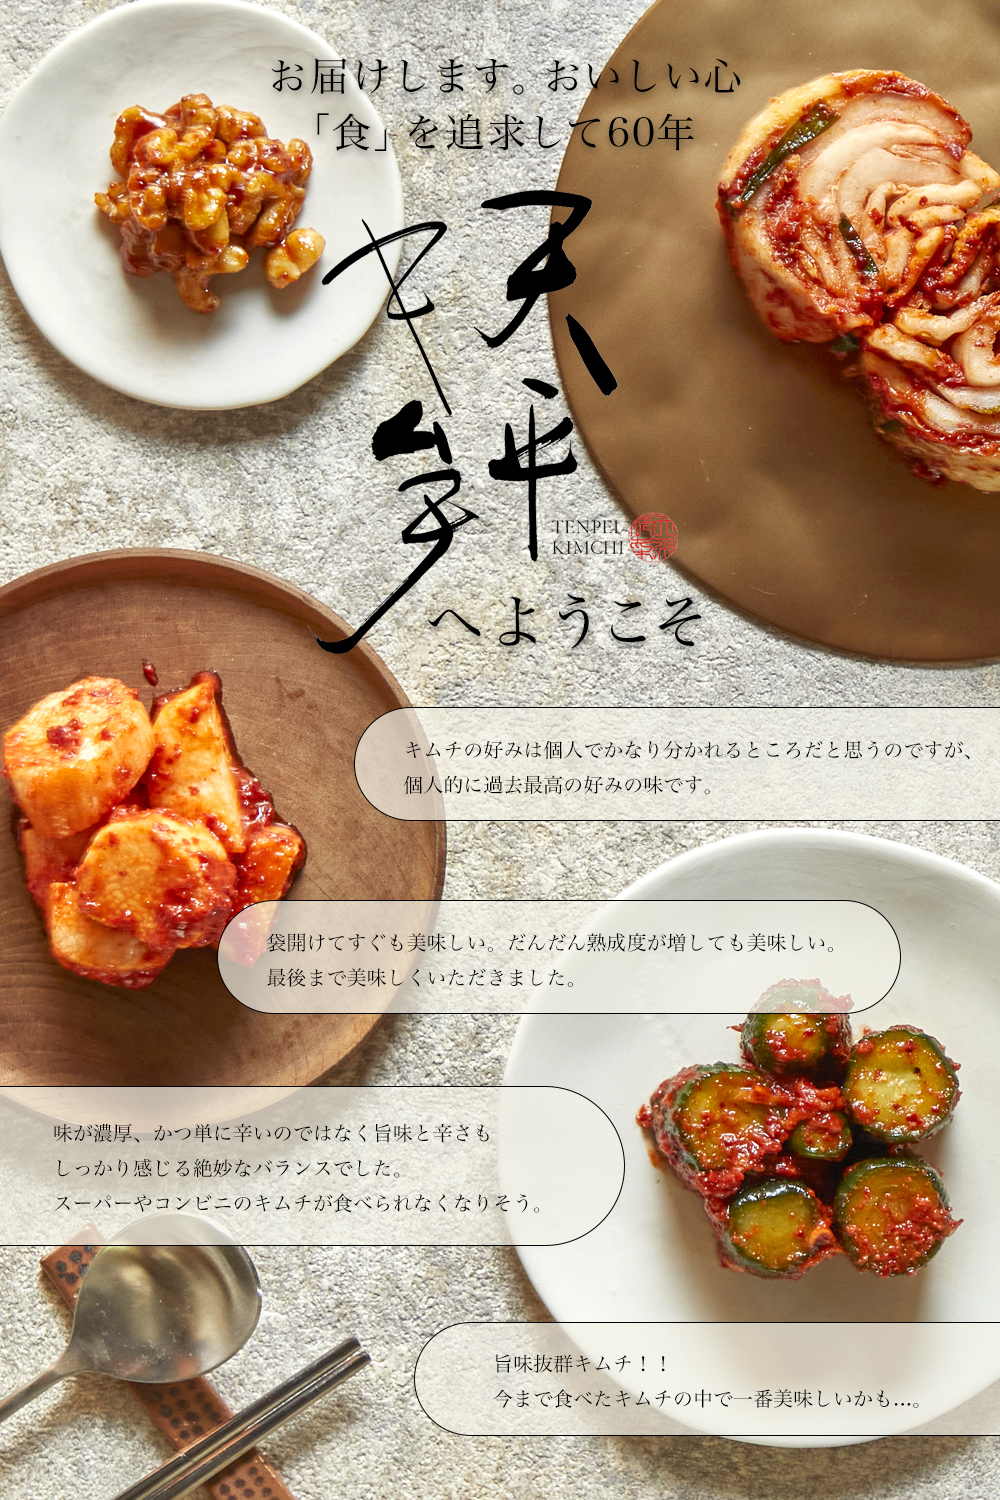  channja 300g kimchi . tsukemono pickles your order gift present sake. .. Korea chili pepper delicacy heaven flat kimchi 